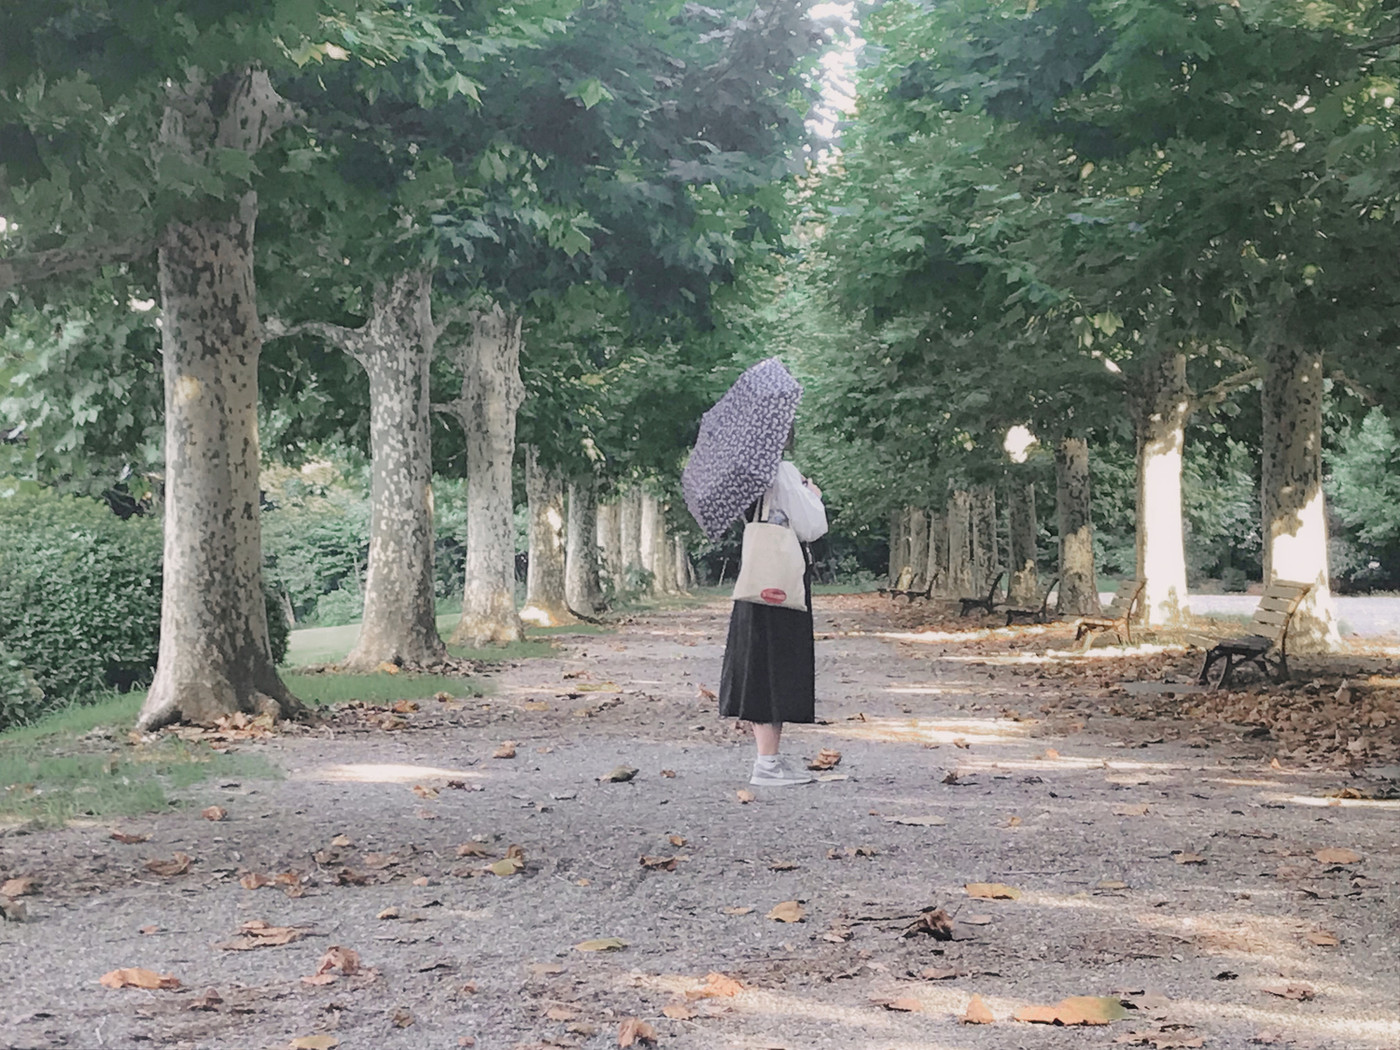 並木道で傘をさしている女性を撮りました